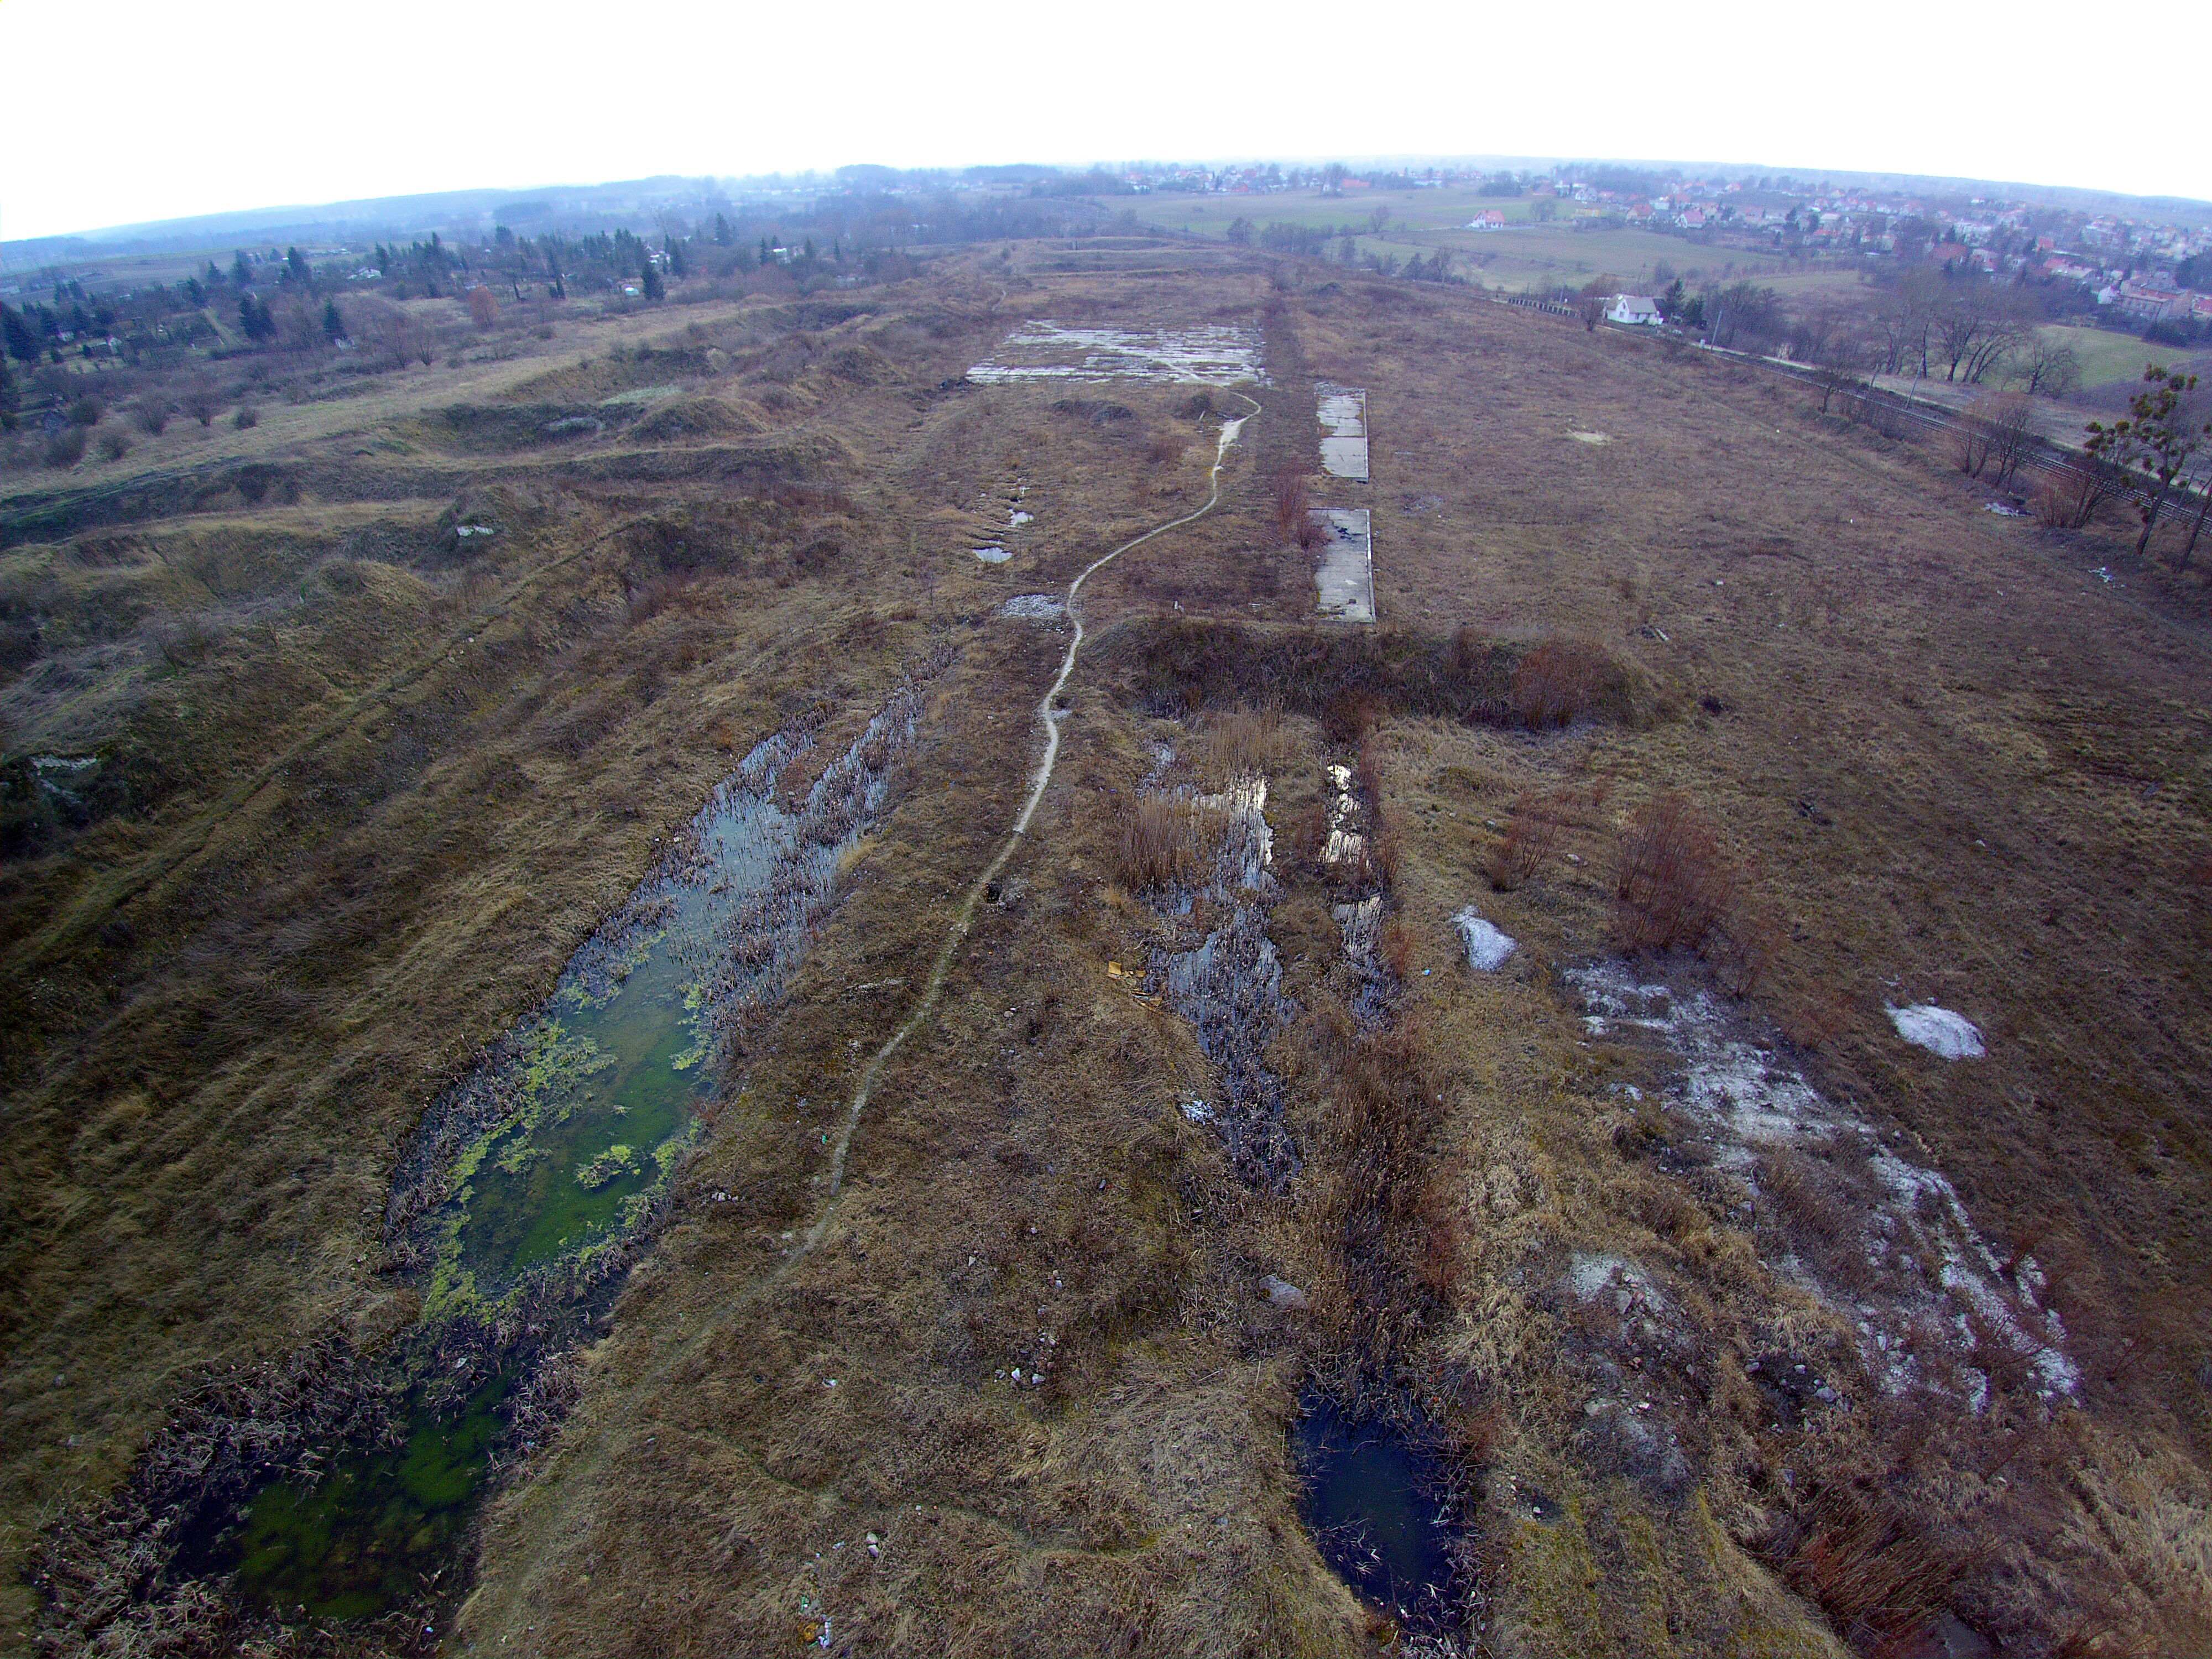 Zdjęcie przedstawia jeden z pustych terenów pofabrycznych w miejscowości Pelpin. Na zdjęciu widać łąki, pola, brak zabudowań.